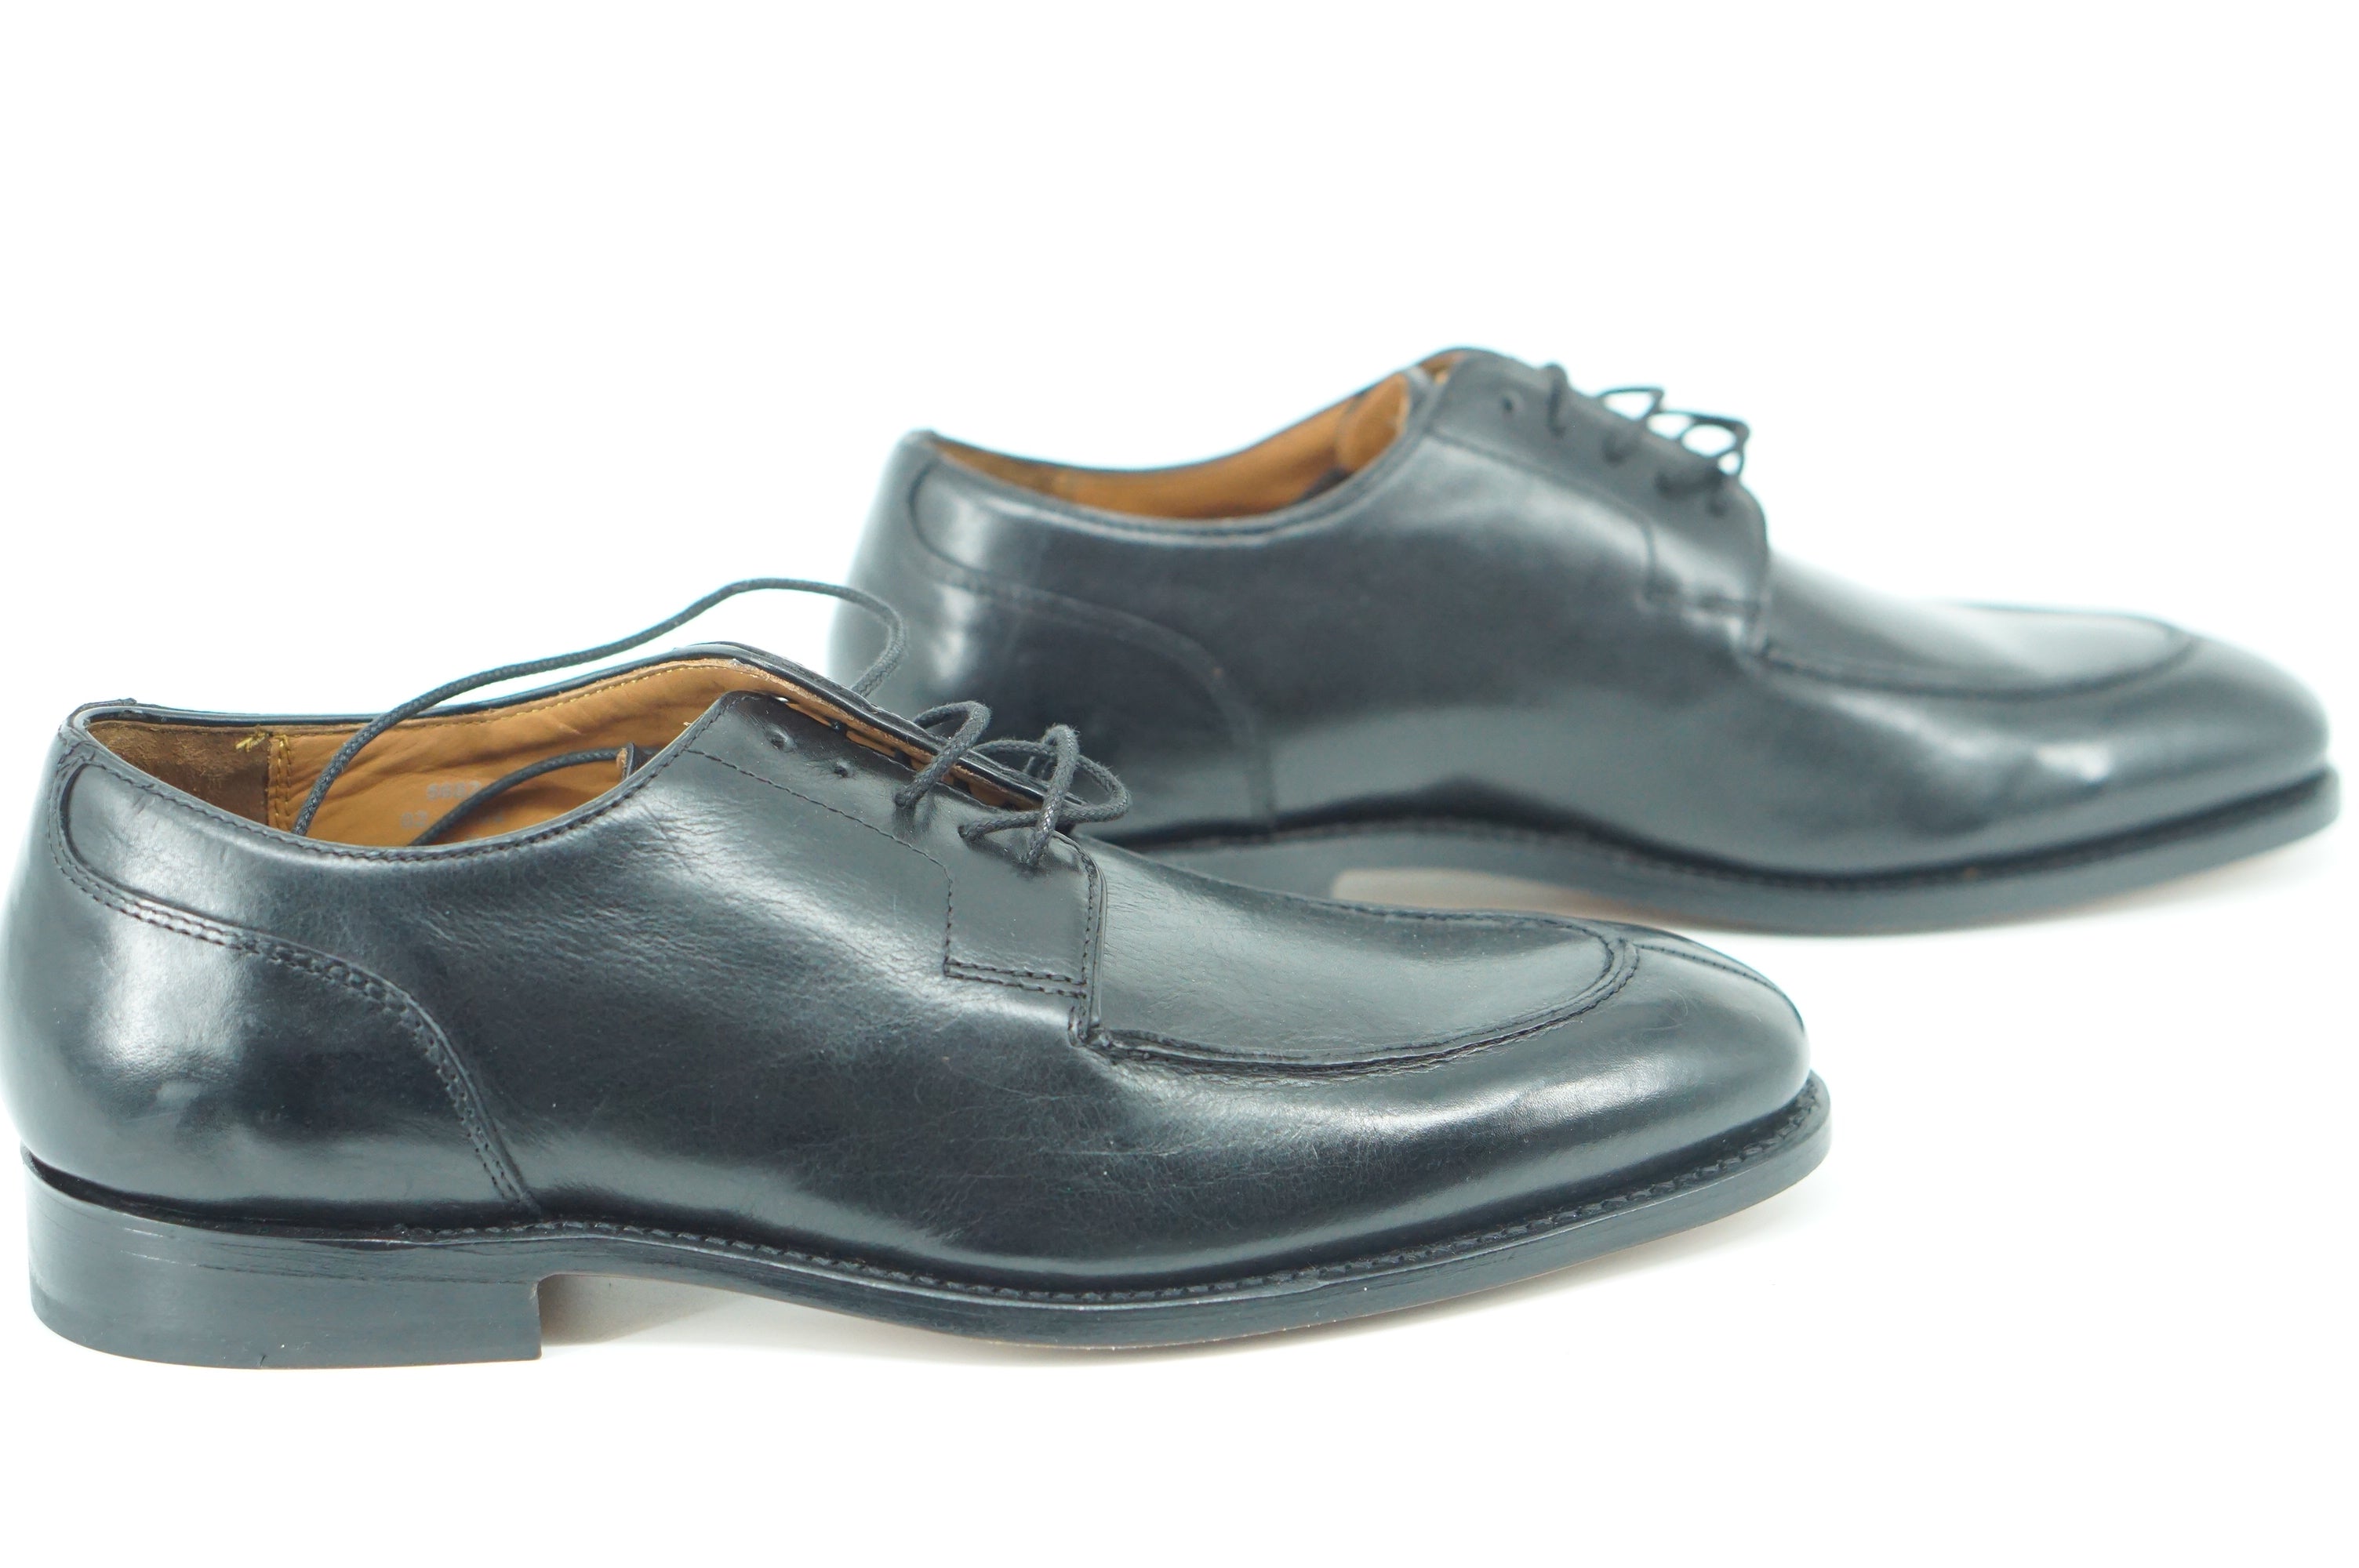 Allen Edmonds Watson Split Toe Derby Oxford Men Shoes Size 8.5 Leather New $395